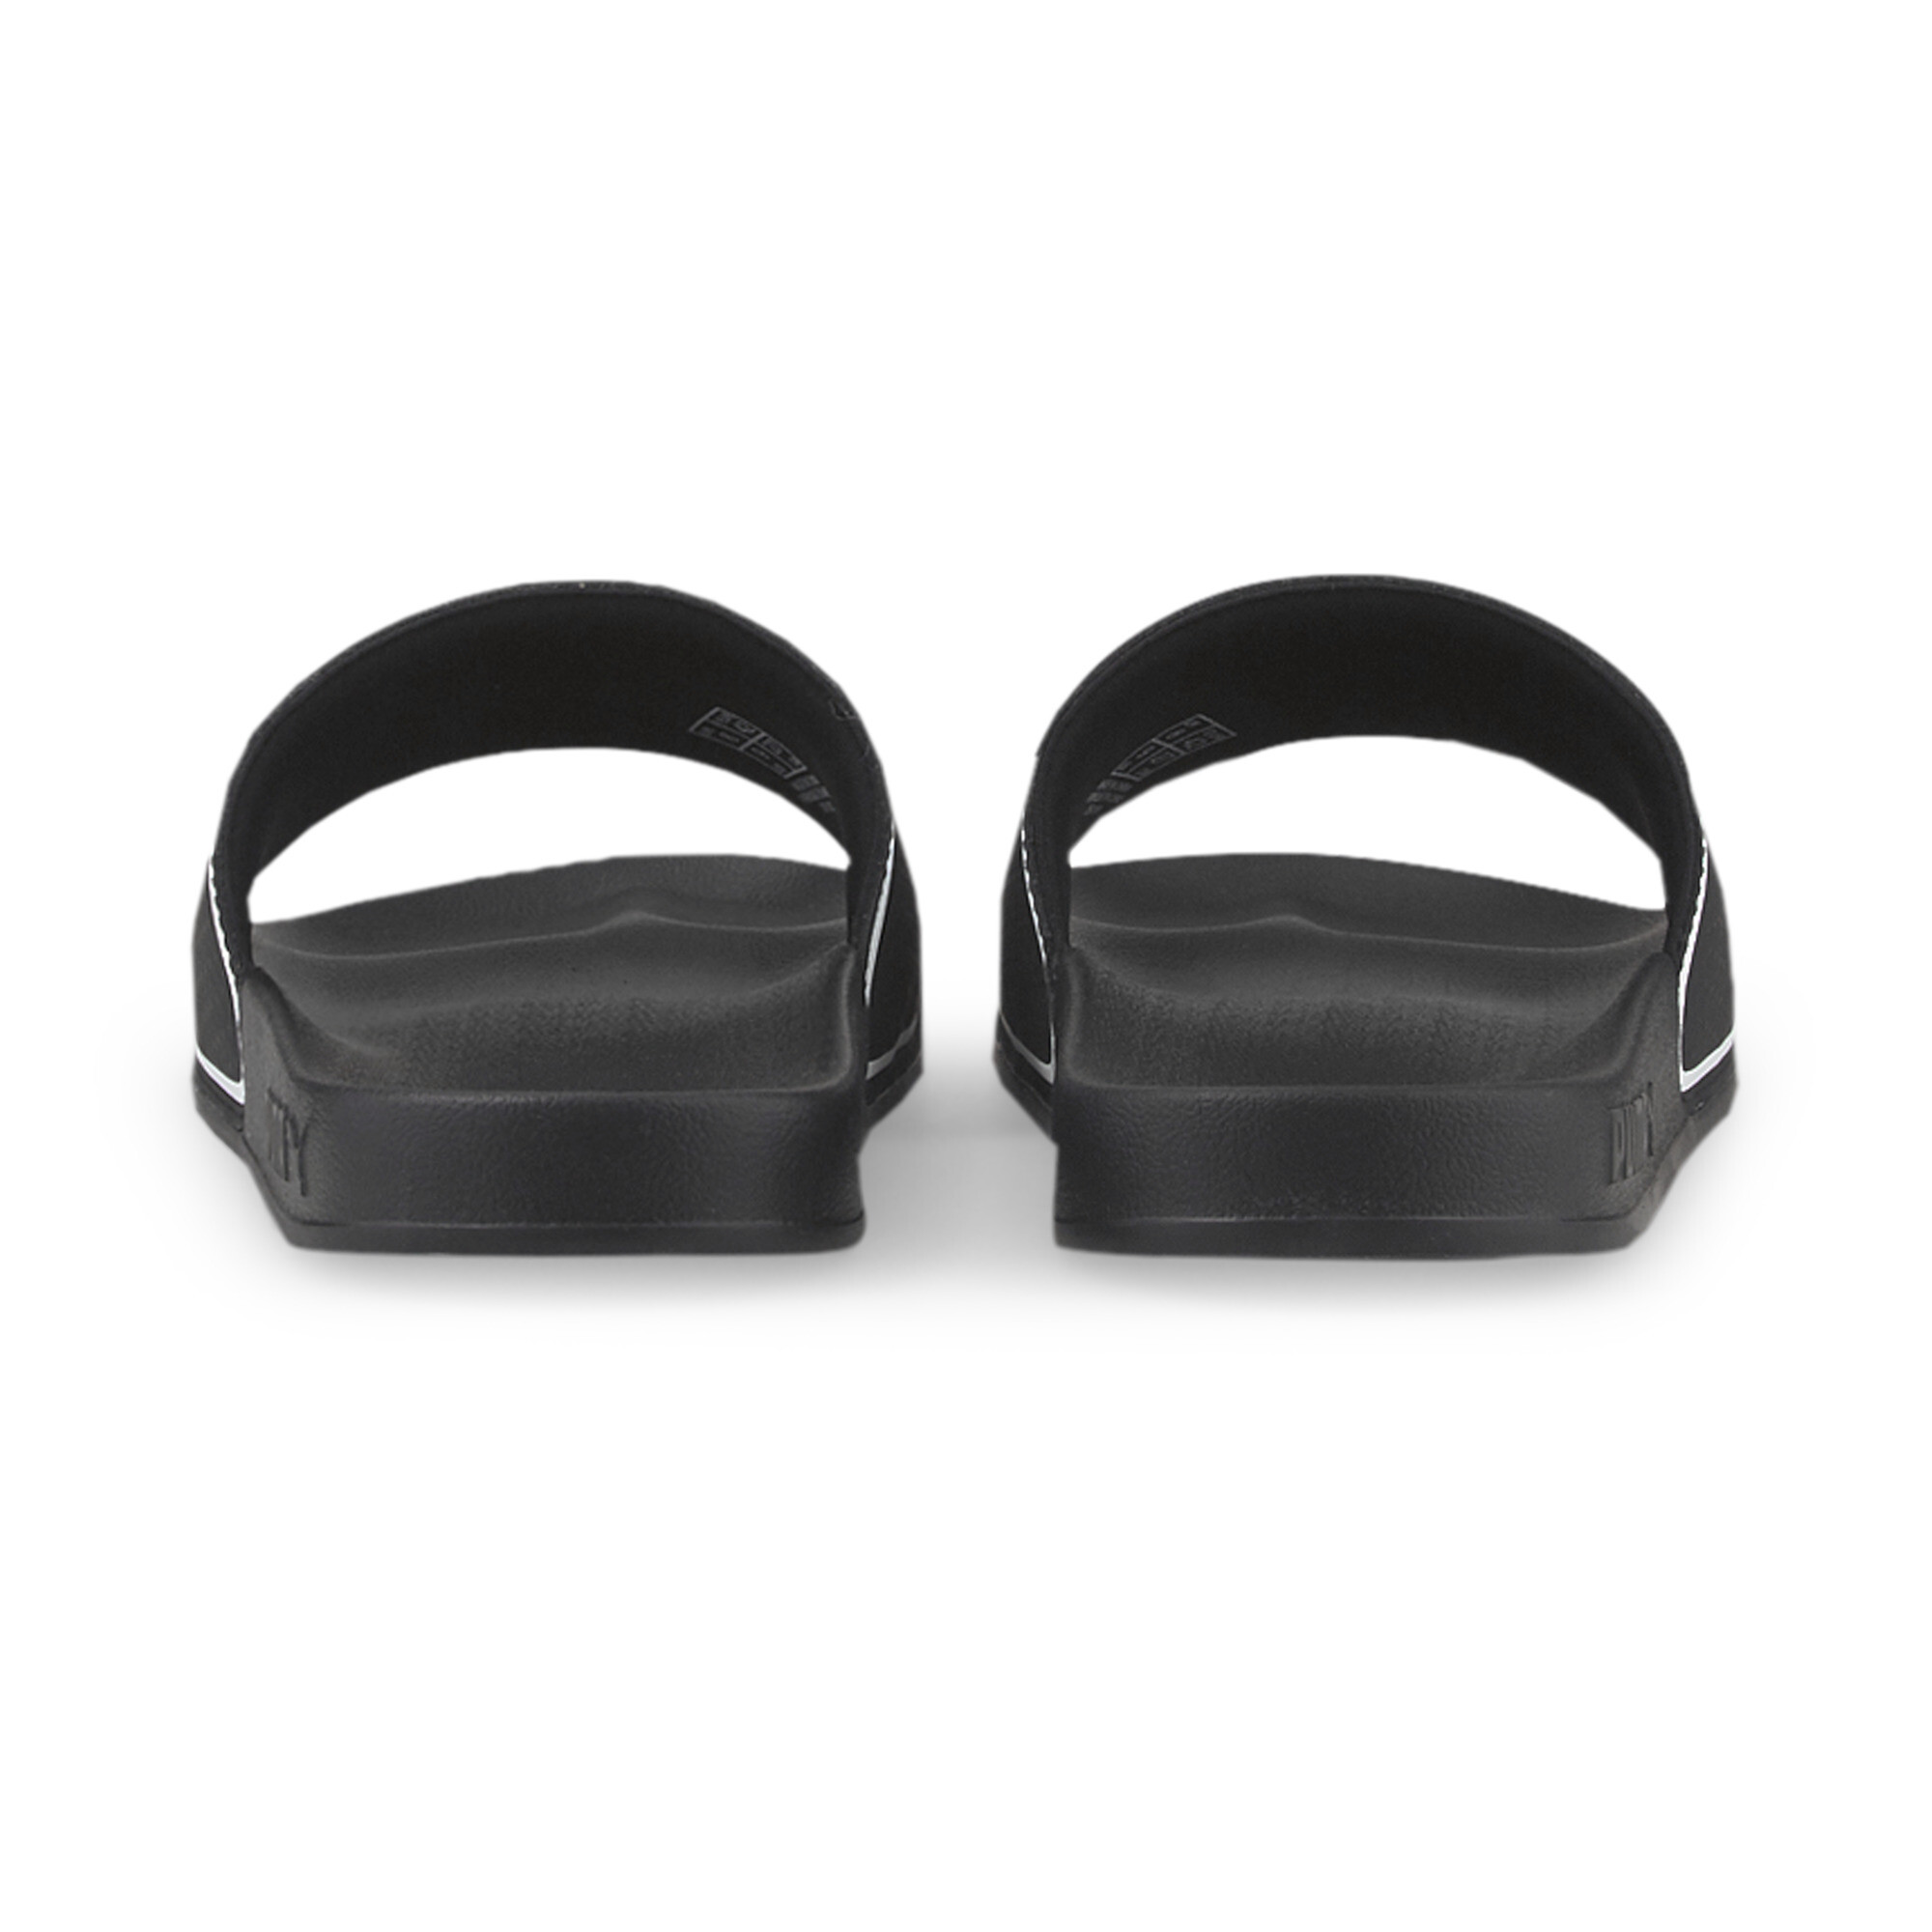 Men's PUMA Leadcat 2.0 Sandals In Black, Size EU 39